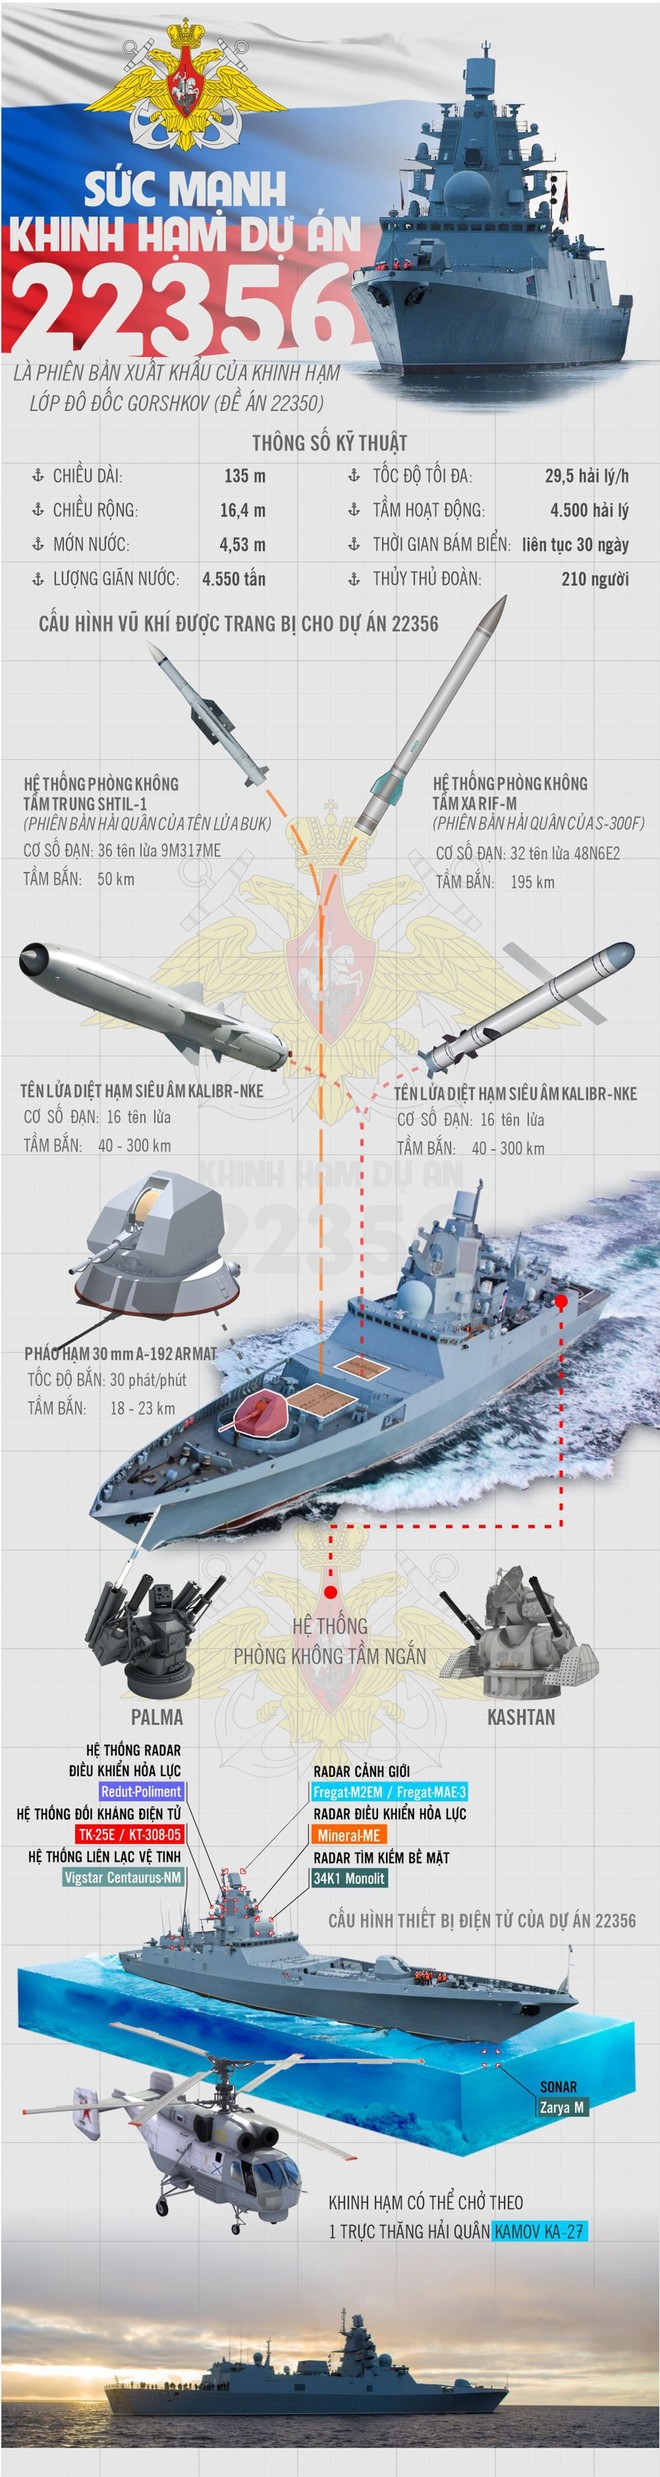 Sức mạnh khinh hạm thuộc Dự án 22356 của hải quân Nga - Ảnh 1.